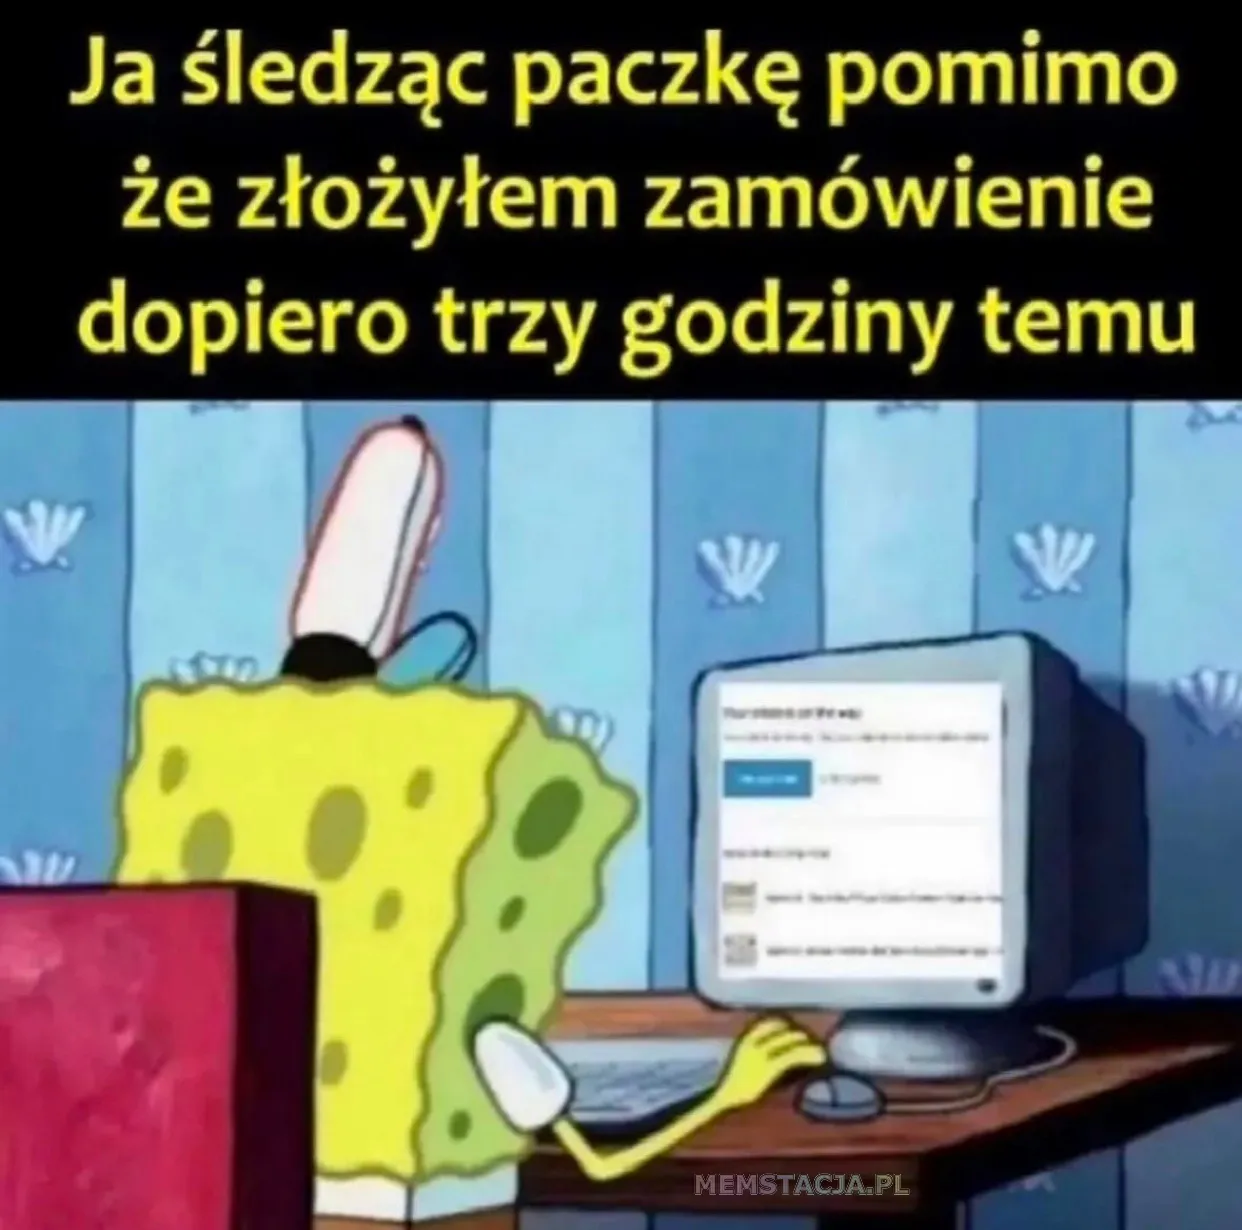 Mem przedstawiający postać postać przed komputerem: 'Ja śledząc paczkę pomimo, że złożyłem zamówienie dopiero trzy godziny temu'